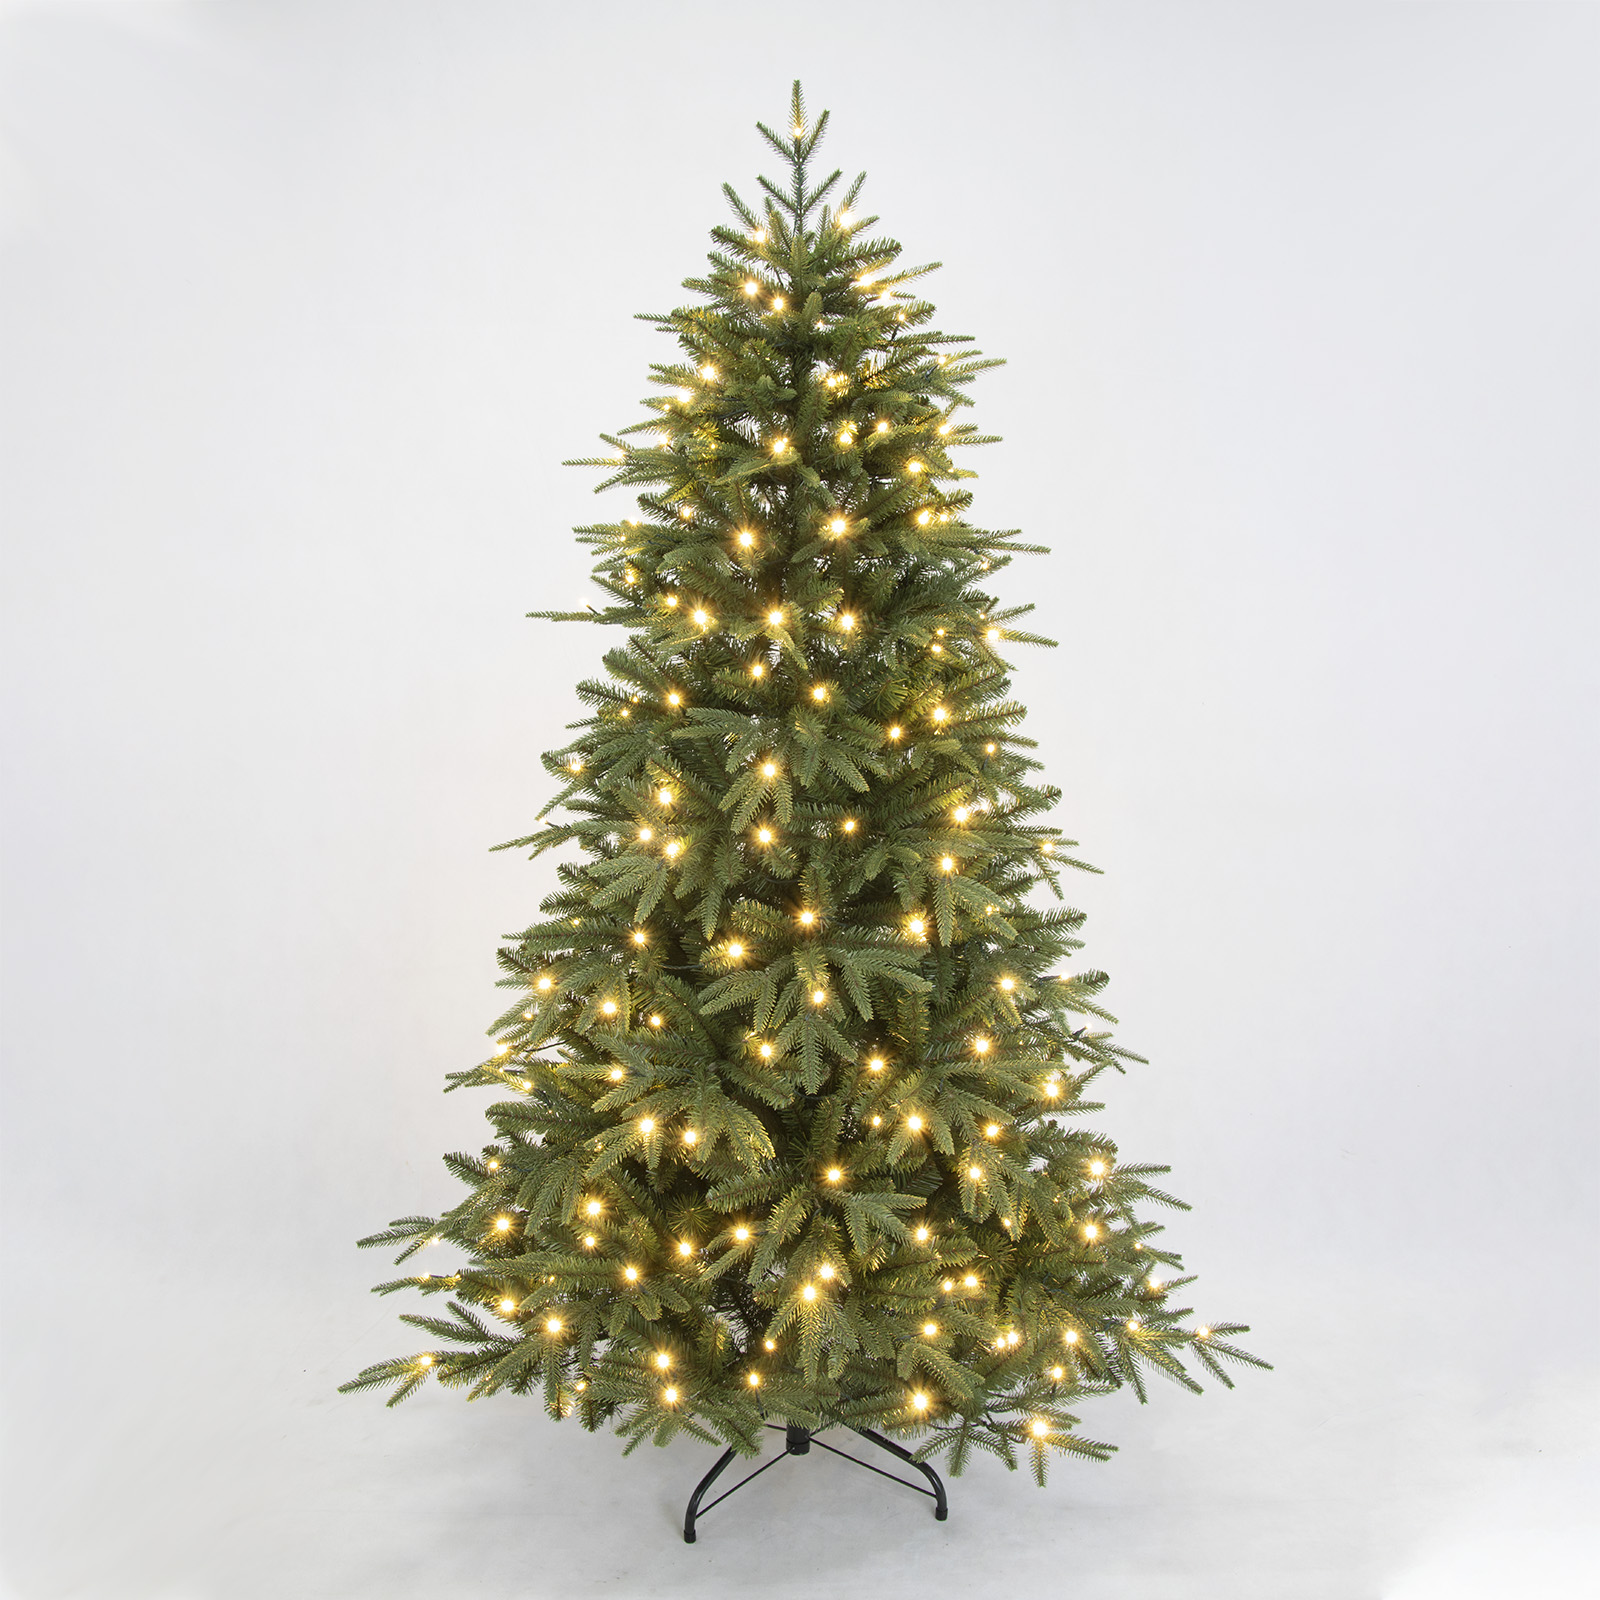 PINEFIELDS Prelit クリスマスツリー 6フィート、ライト付き人工クリスマスツリー、ライト付きクリスマスツリー、本物そっくりのクリスマスツリー、240アプリ制御のLEDウォームライト、PEミックスチップ、ヒンジ、メタルベース